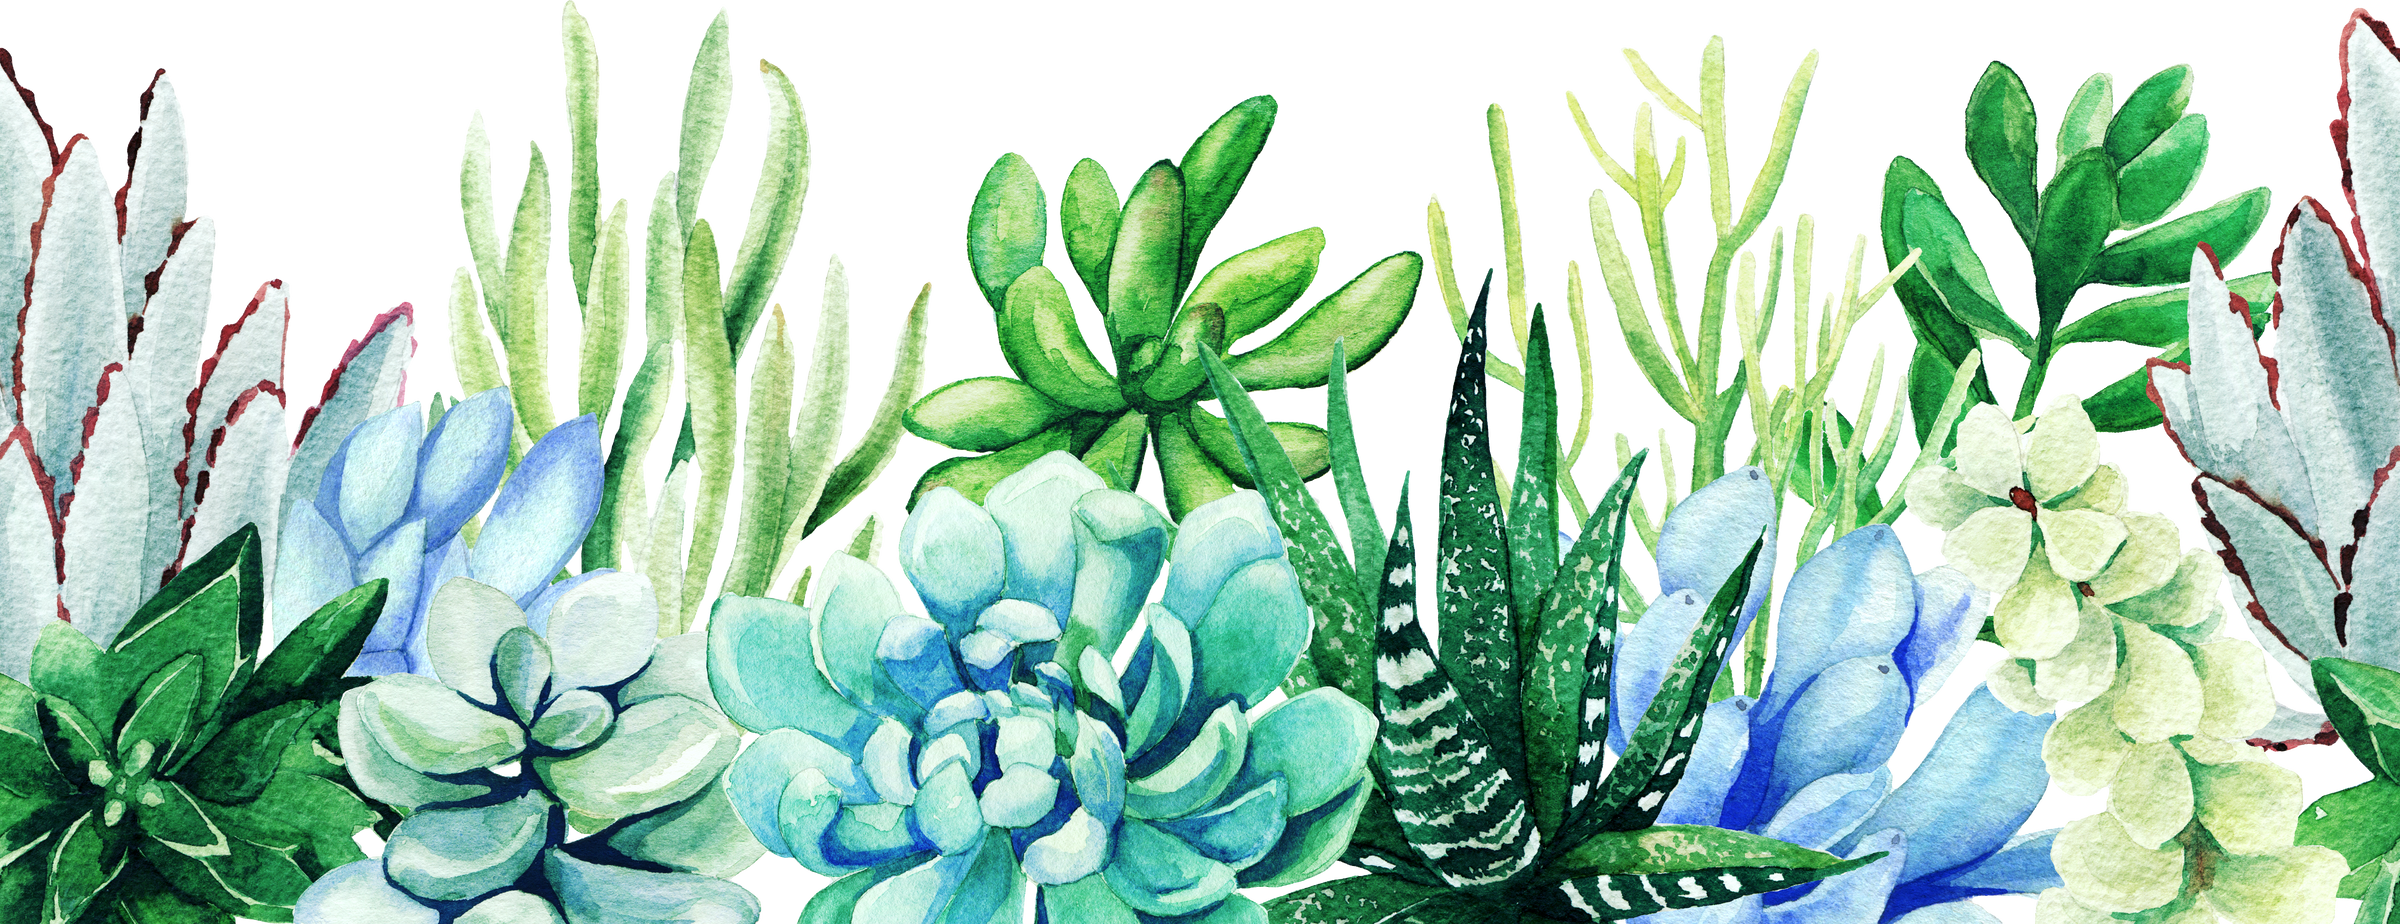  Succulent Plants Illustration 